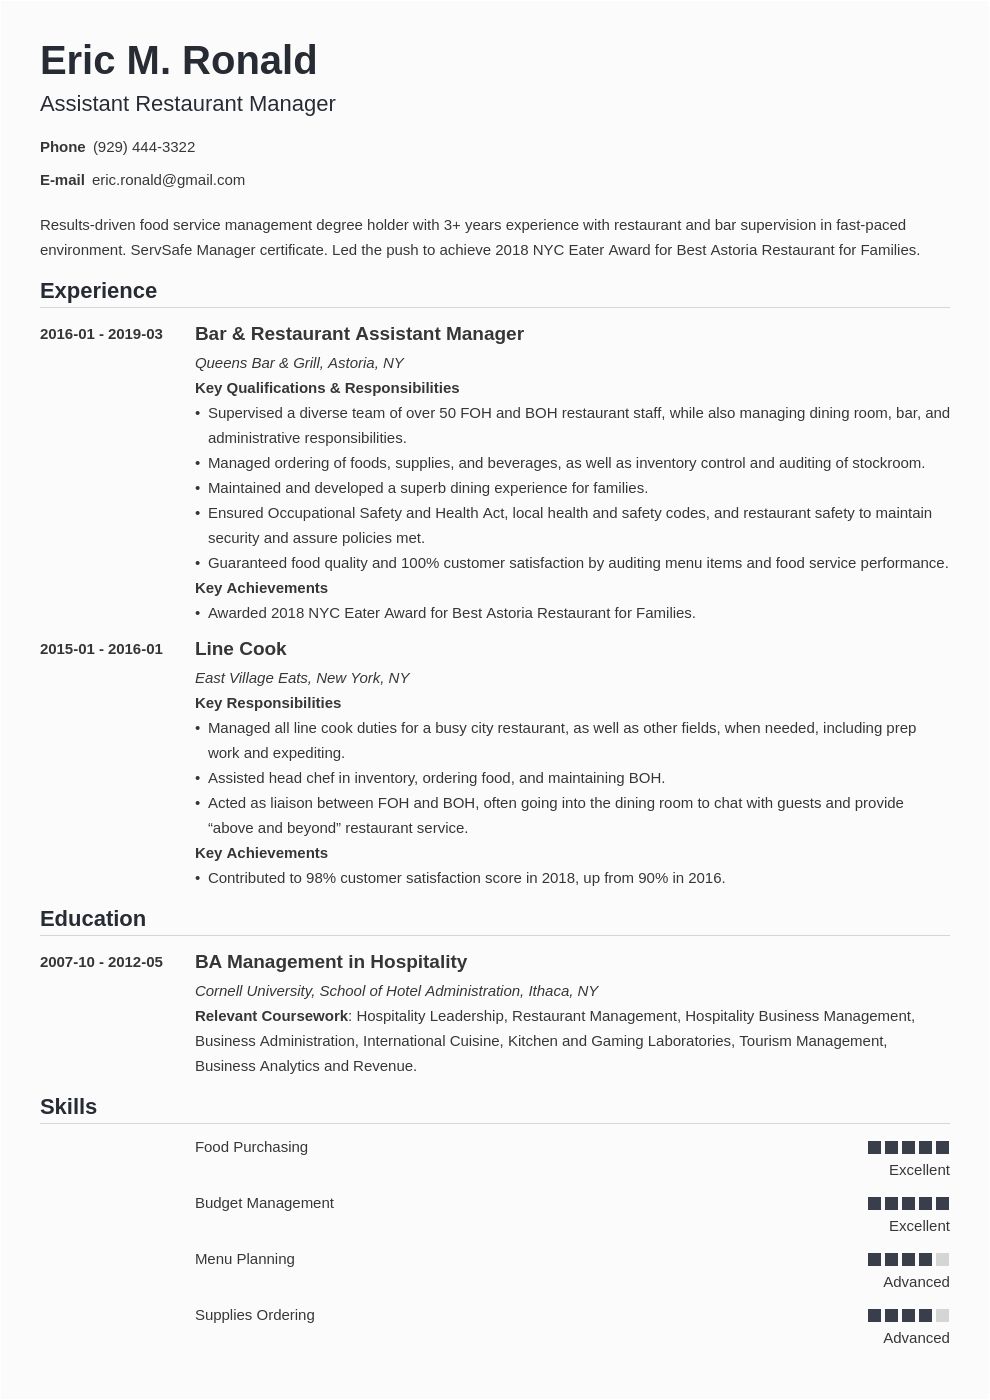 Sample Resume for Restaurant Manager Position Restaurant Manager Resume Examples Job Description Skills